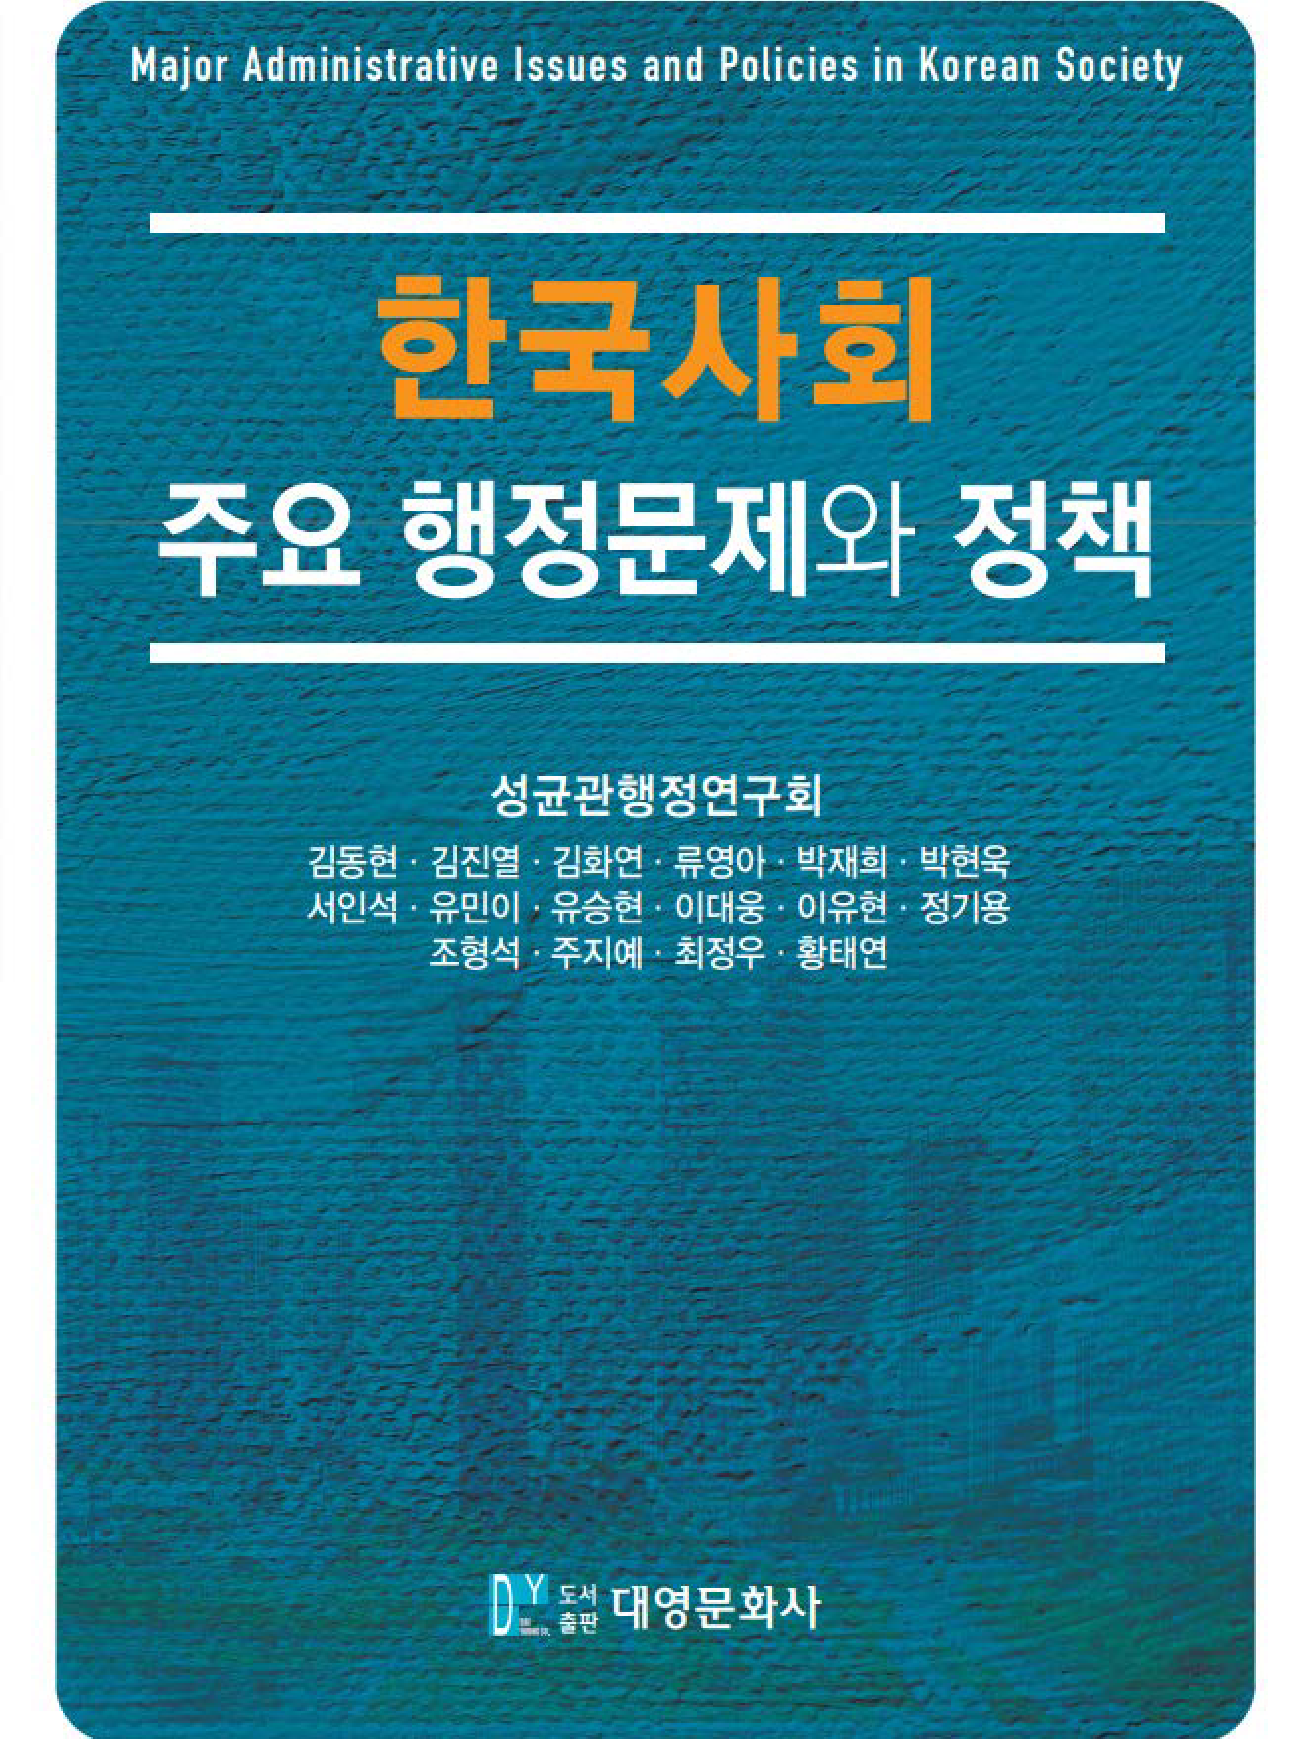 한국사회 주요 행정문제와 정책